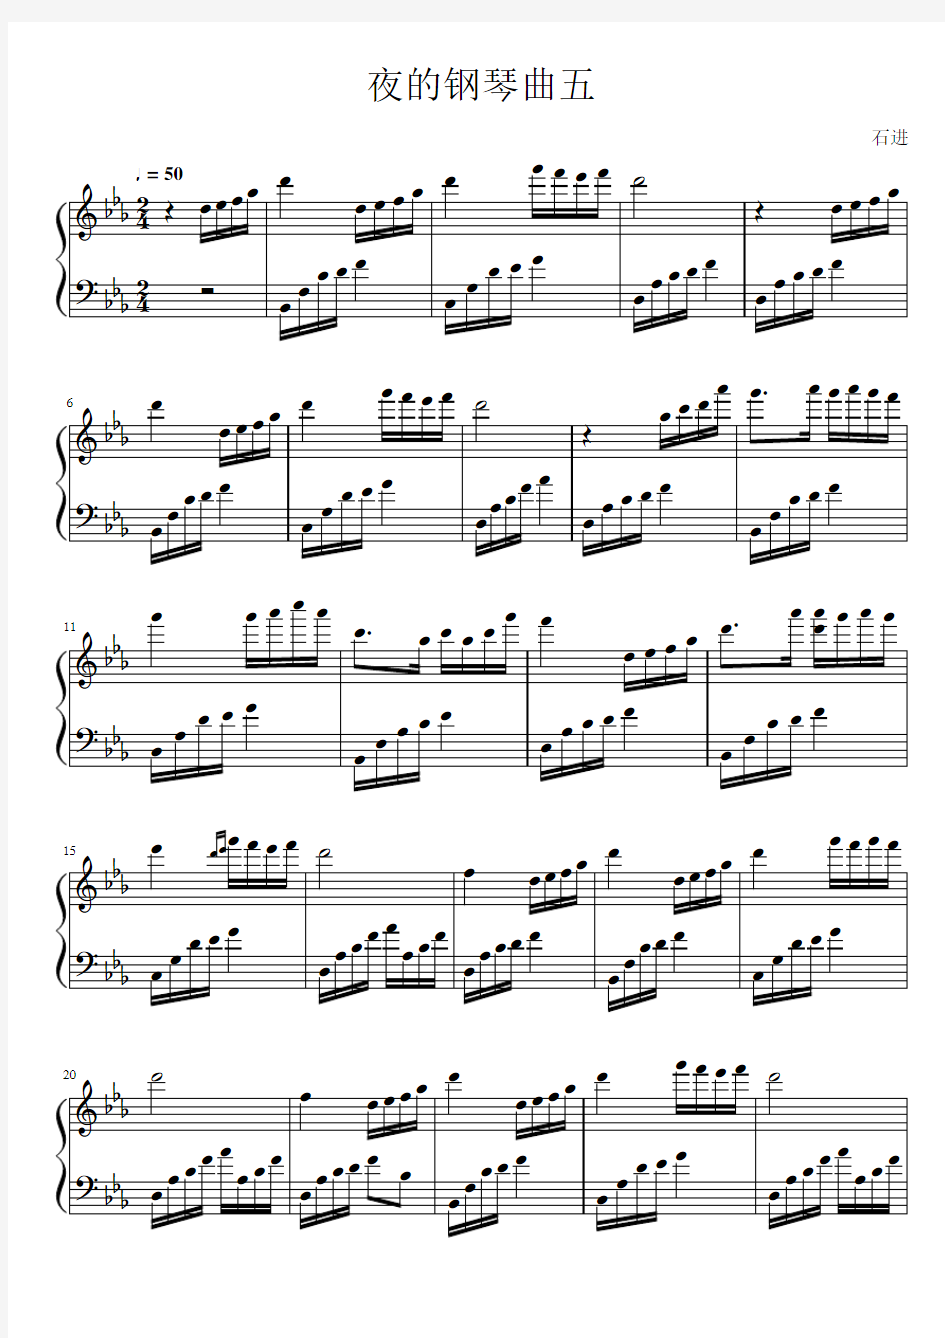 夜的钢琴曲五钢琴谱(高清原版)-完整乐谱-PDF